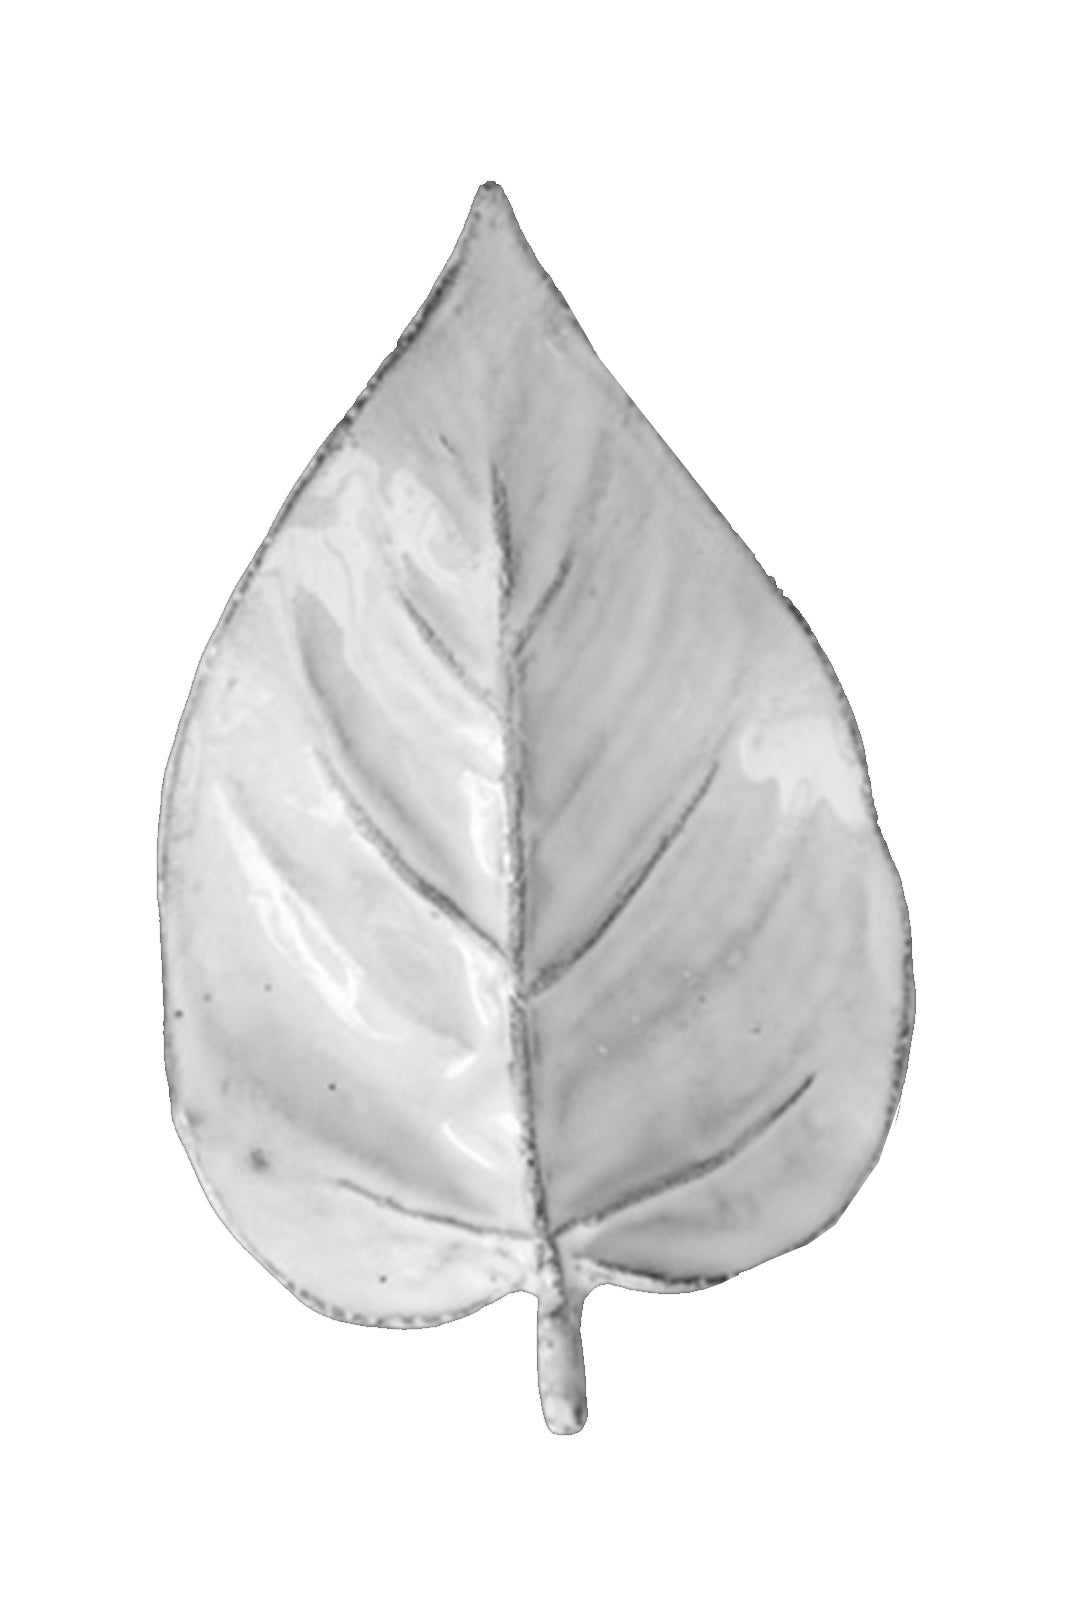 Leaf "La Mini” by José Lévy